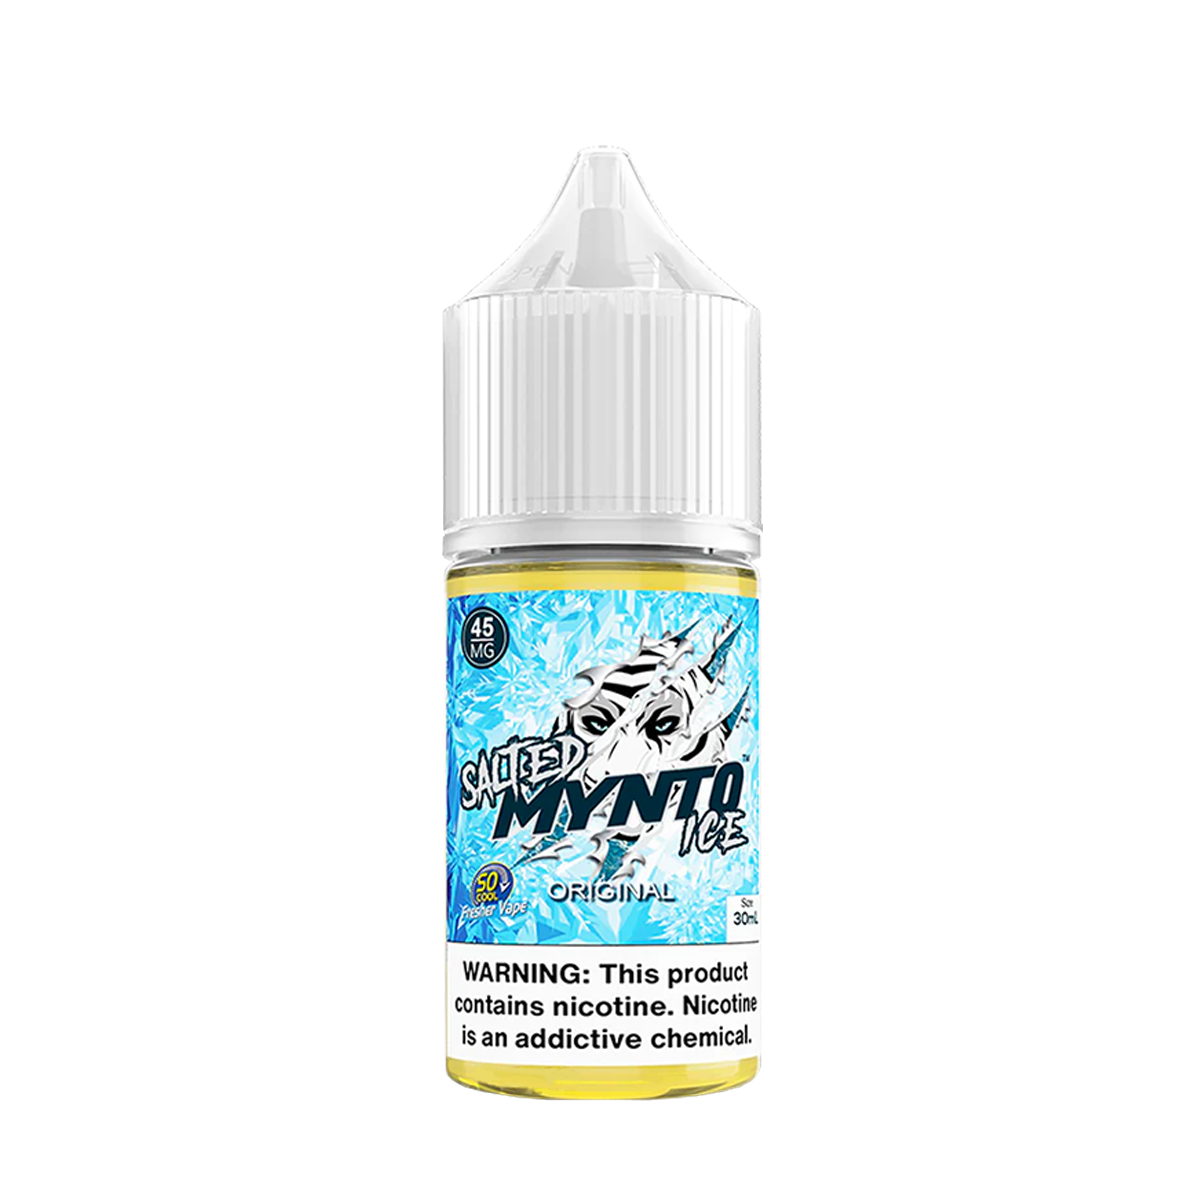 Suorin Mynto Ice Salt Nicotine Vape Juice 45 Mg 30 Ml Original Ice